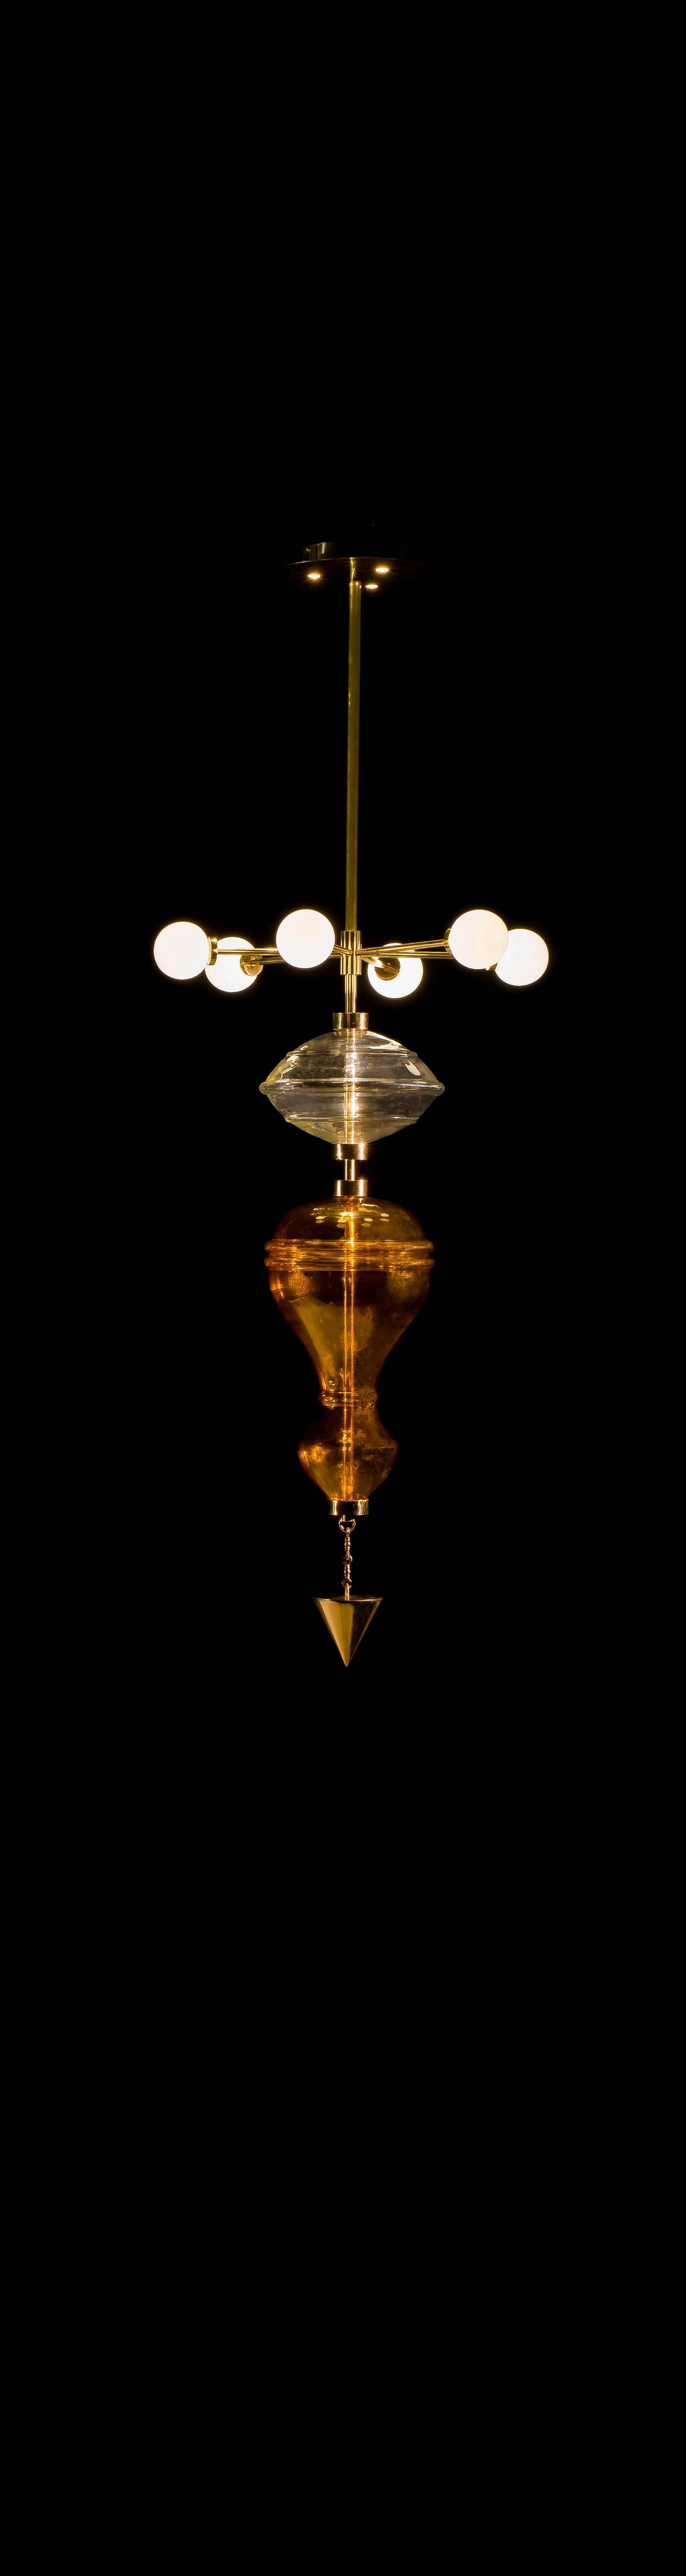 La lampe suspendue Shikhara s'inspire de proportions dérivées des temples indiens. Il représente le système des cinq éléments ou Panchmahabhuta - Bhumi (Terre), Jala (Eau), Agni (Feu), Vayu (Air ou Vent), Akash (Ether), chaque forme représentant